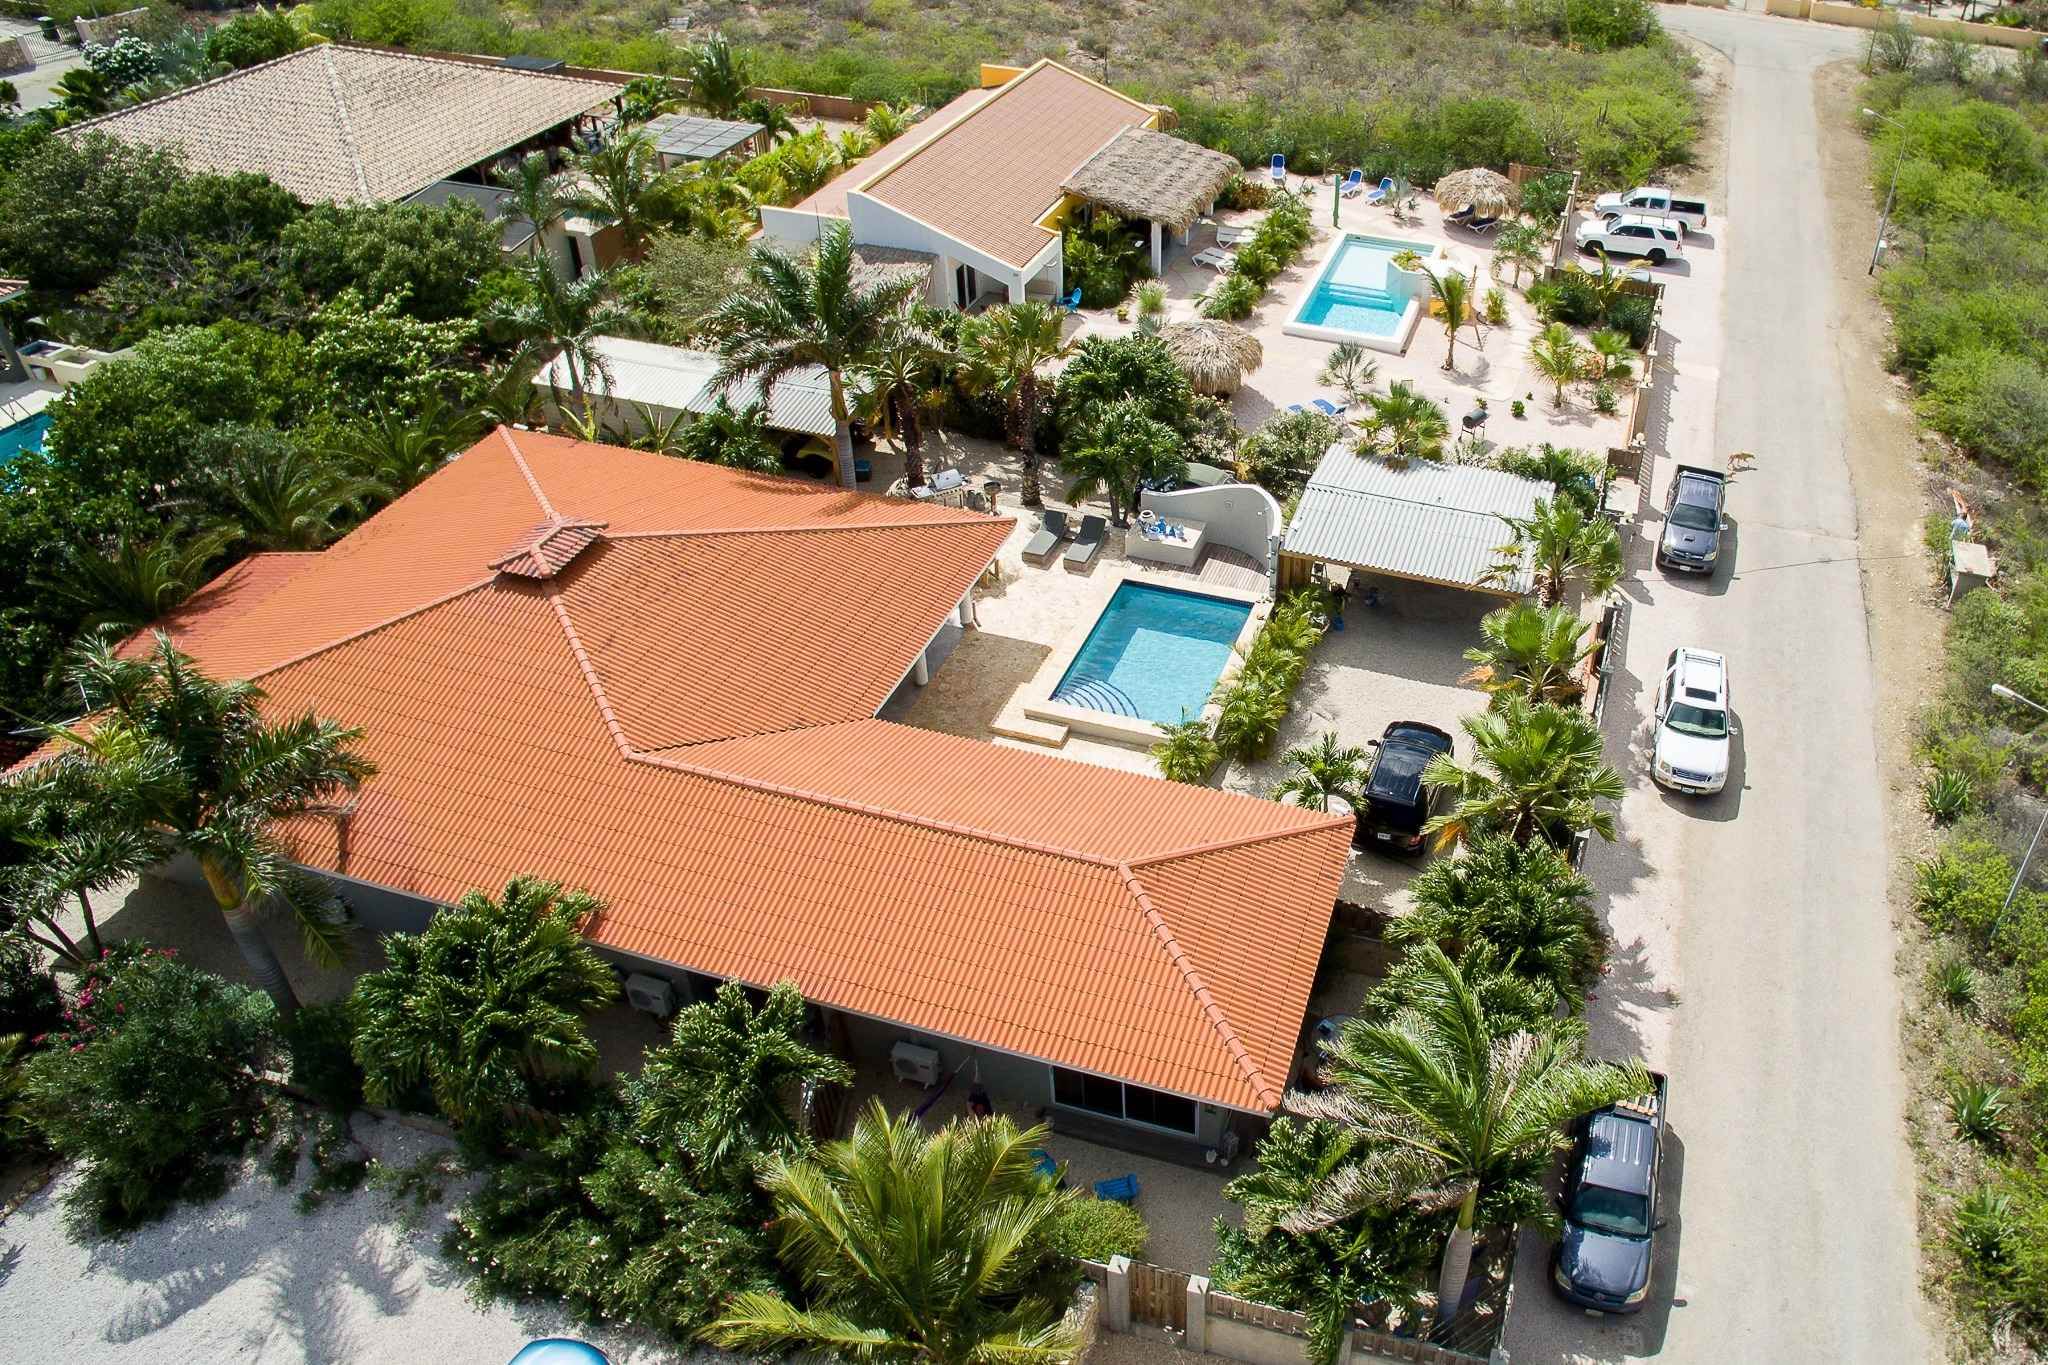 villa miete bonaire | Wohnung miete bonaire | Ferienhaus | Vermietung Bonaire